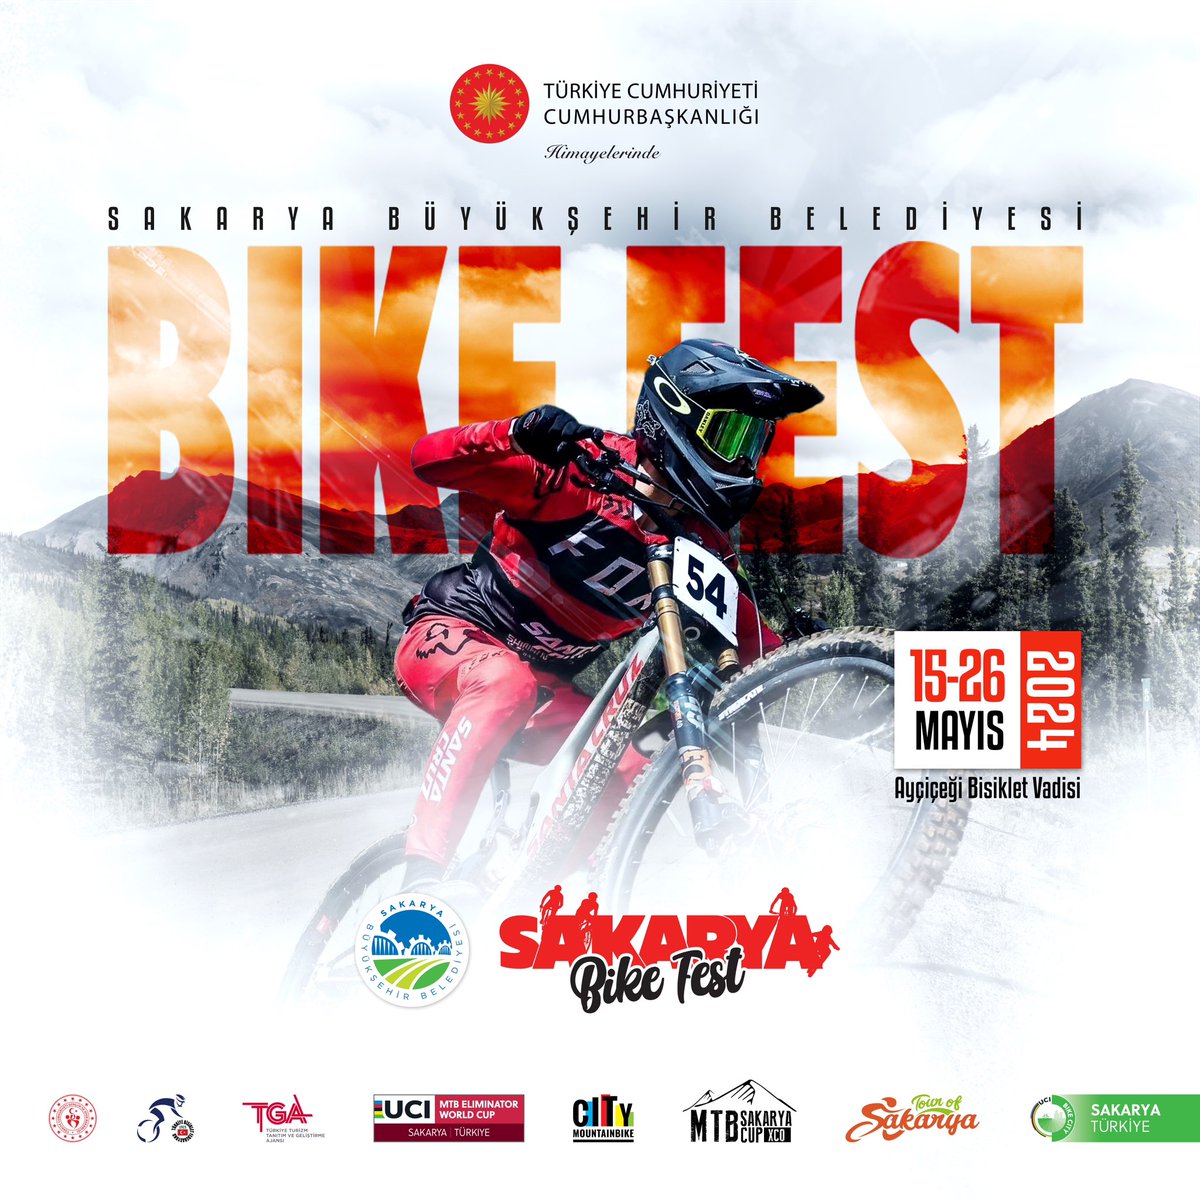 🚴 Tour of Sakarya 'Bike Fest' Basın Lansmanı şimdi canlı yayınla sportstv'de! İzlemek için 👉 bit.ly/3aJXzgt